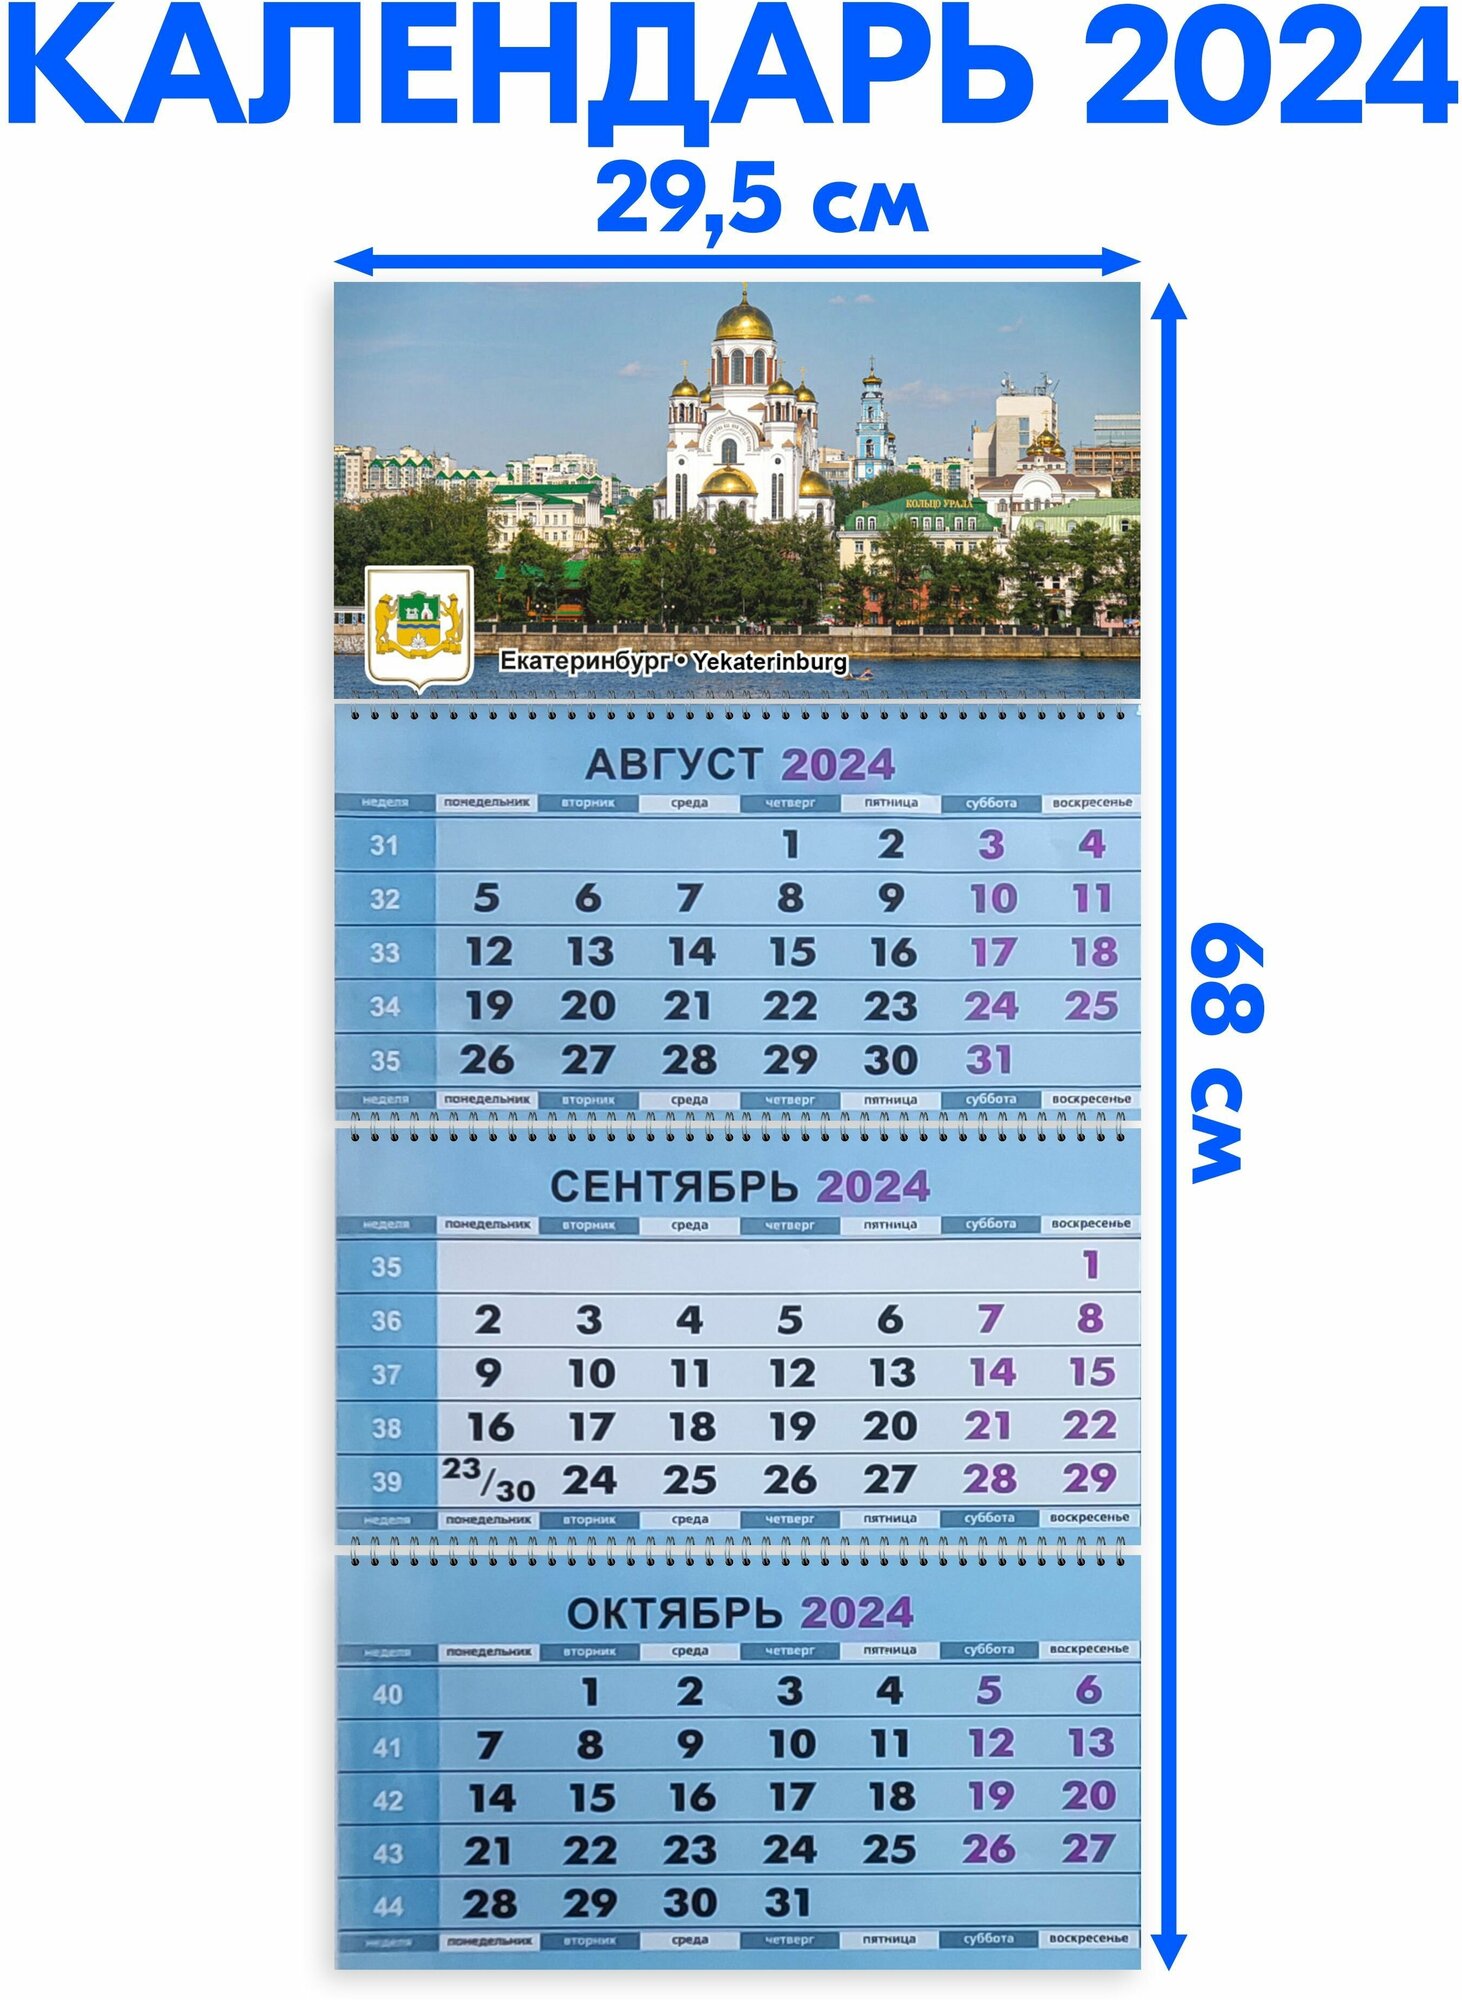 Календарь настенный 2024 трехблочный квартальный Екатеринбург. Длина календаря в развёрнутом виде -68 см, ширина - 29,5 см.